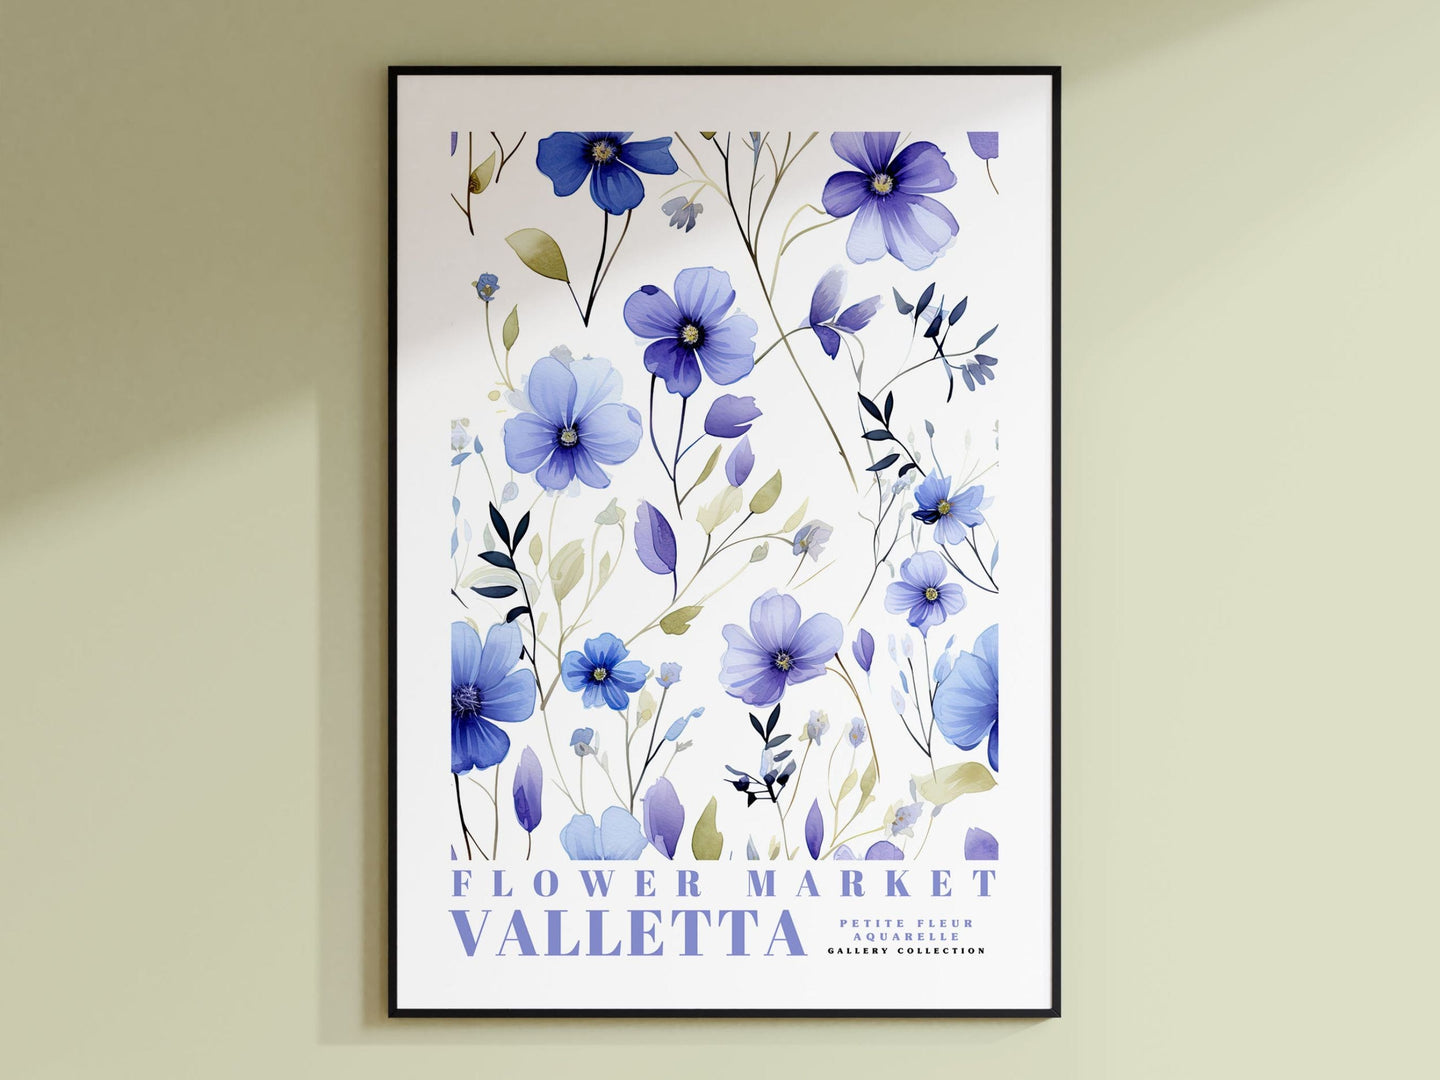 Valletta Flower Market Poster